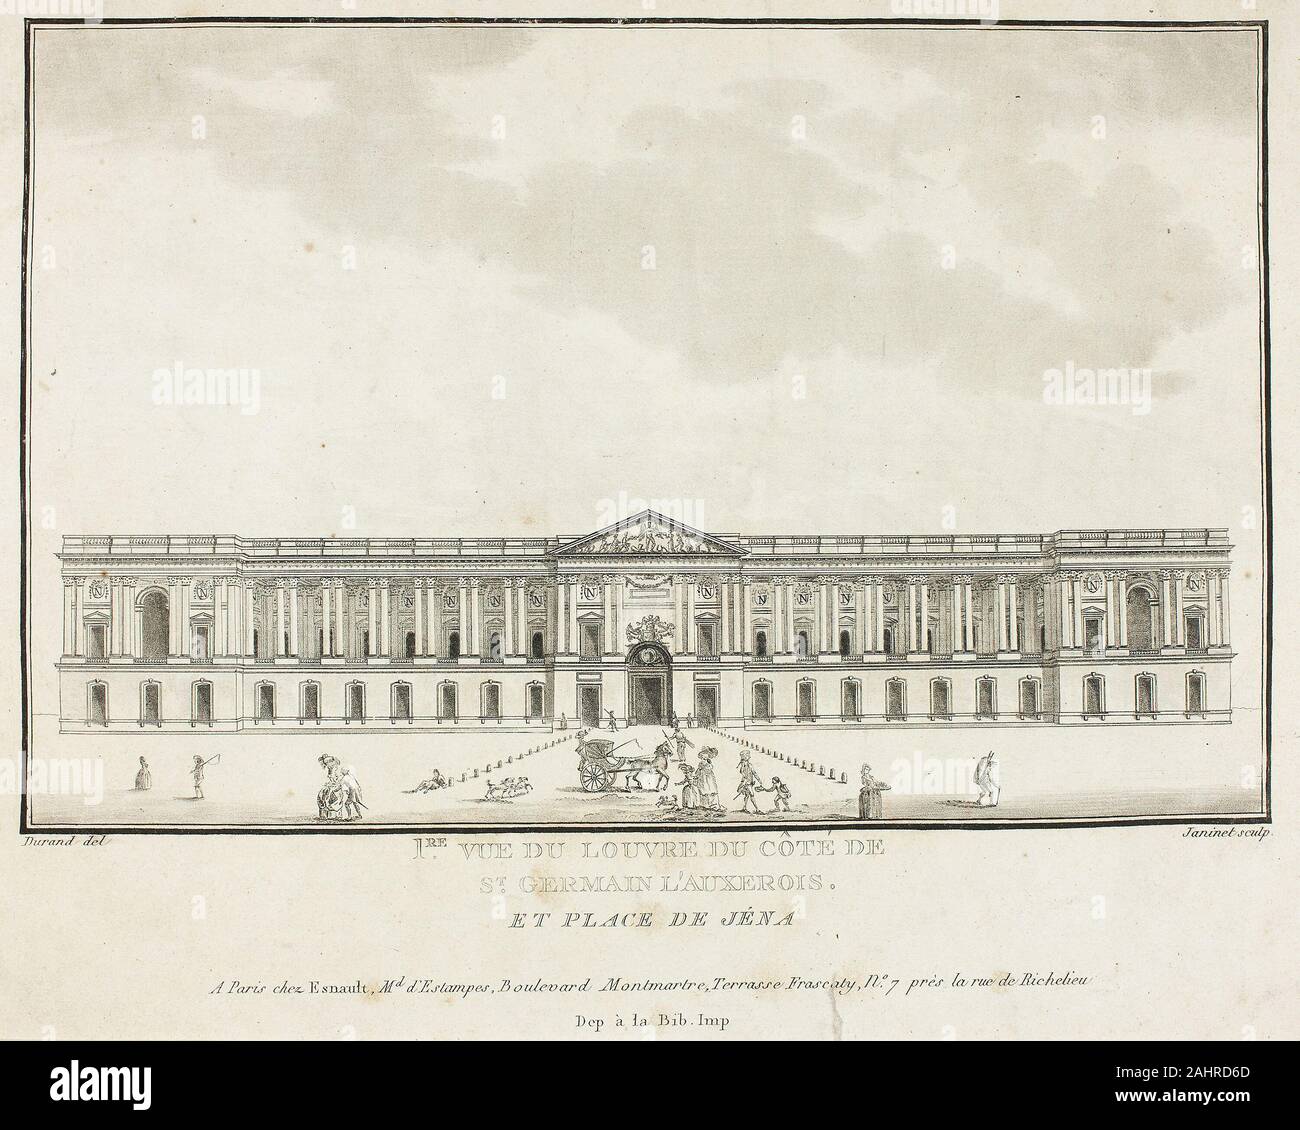 François Louis Français. Blick auf den Louvre von der Seite von St. Germain l'Auxerrois. 1834 - 1897. Frankreich. Aquatinta auf Papier Stockfoto